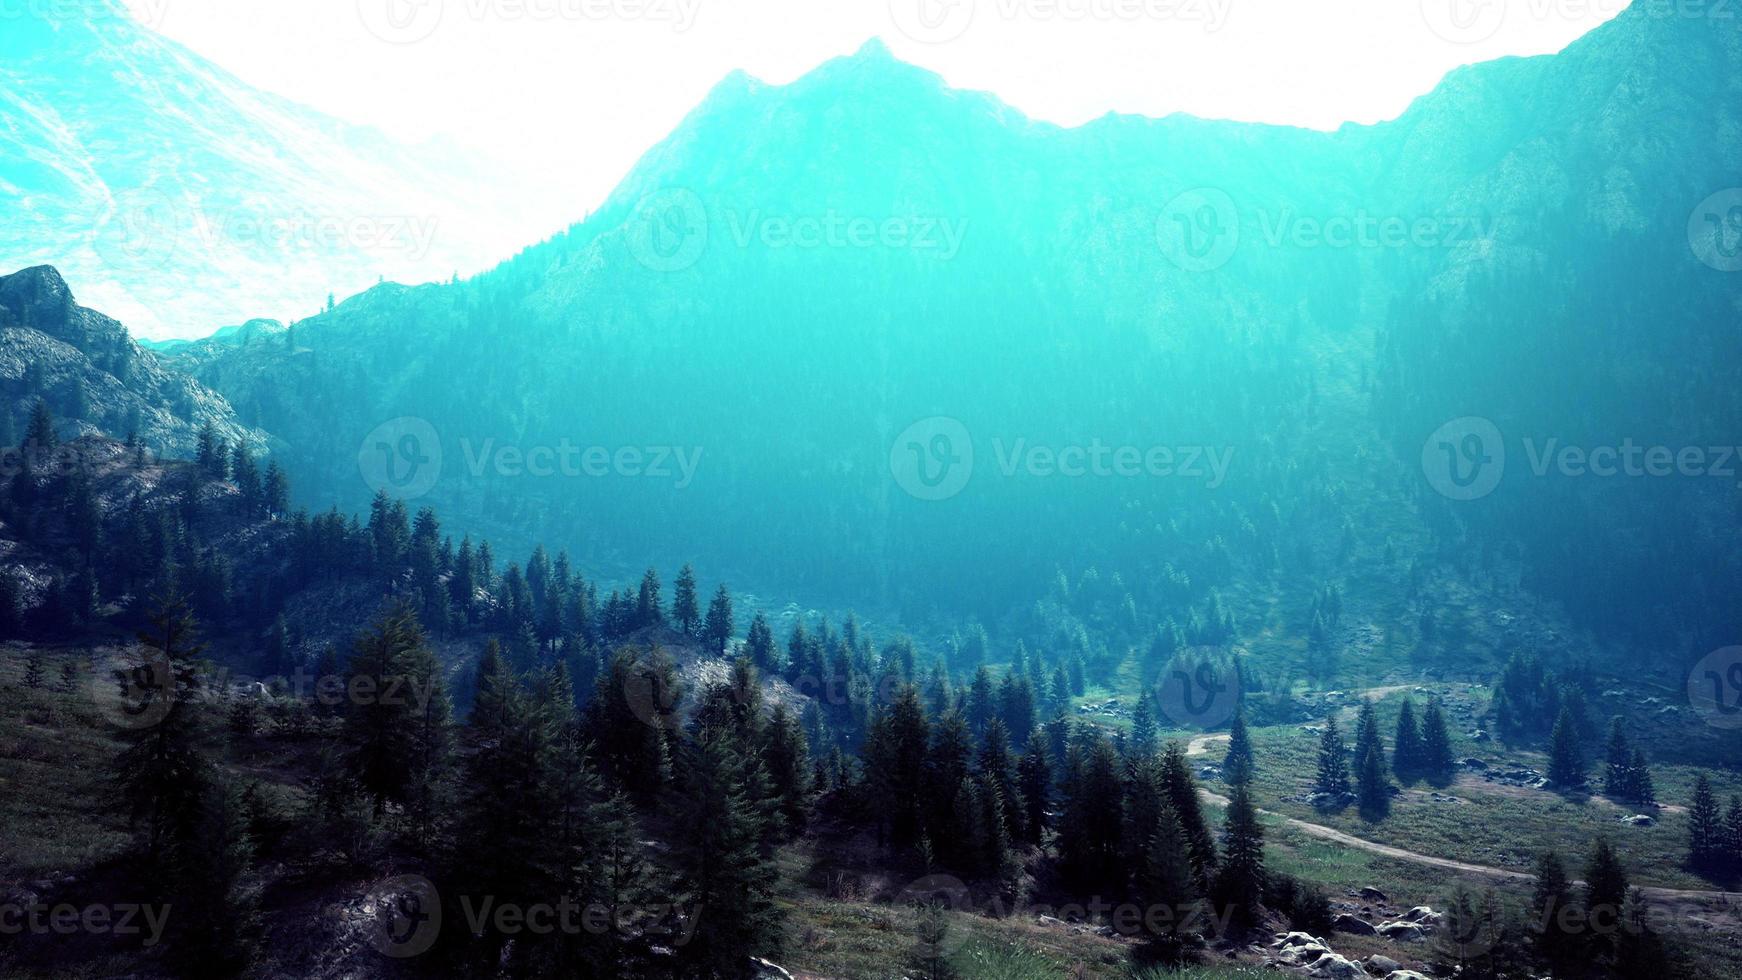 route de montagne sinueuse au-dessus des prairies alpines à la lisière de la forêt photo